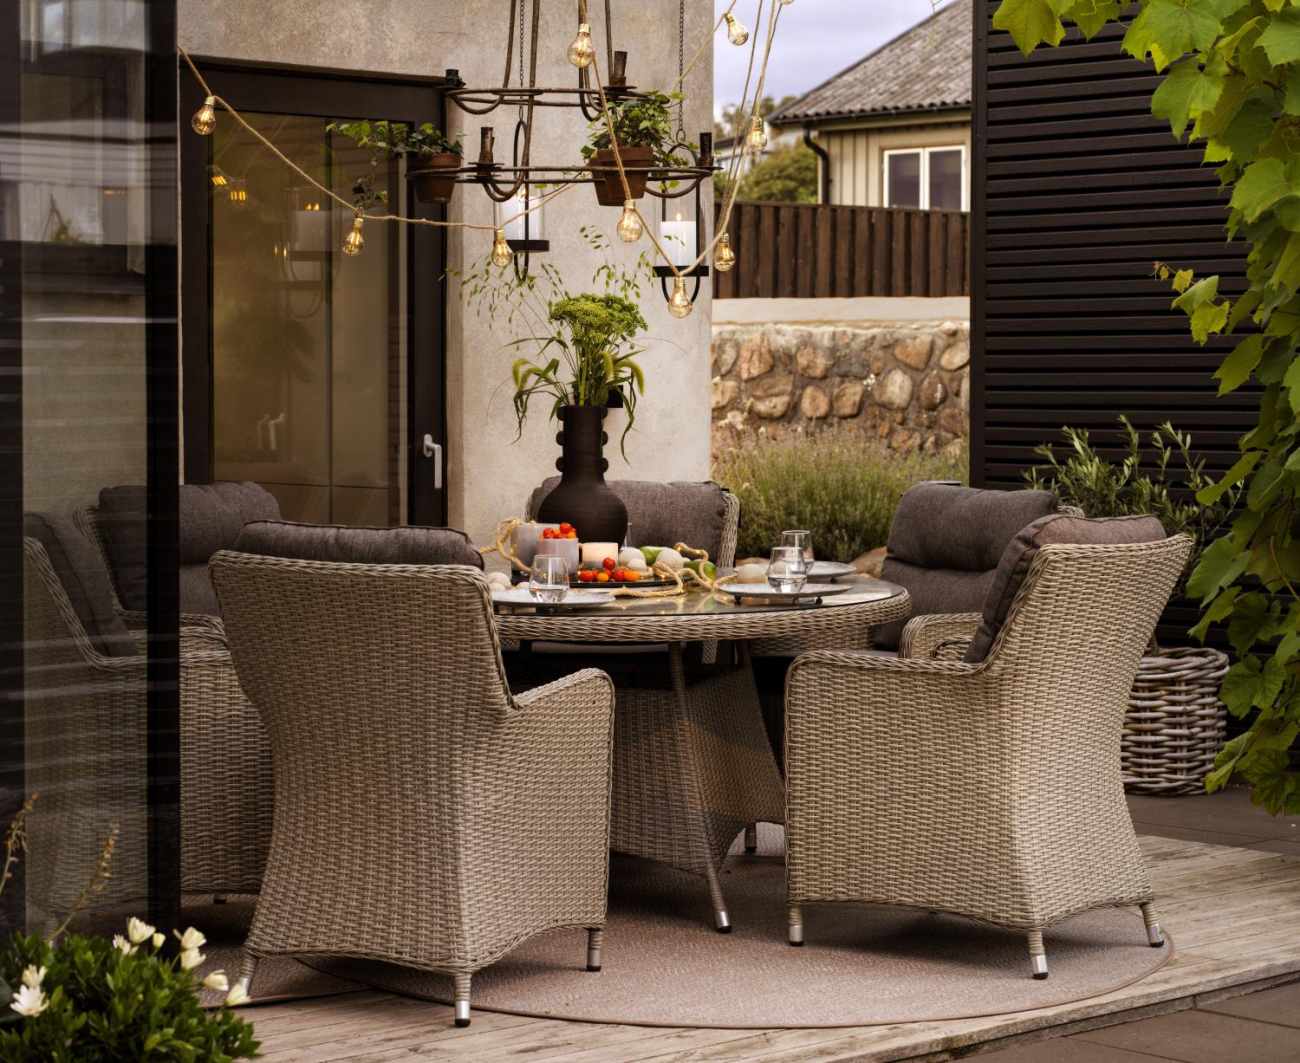 Der Gartenstuhl Hornbrook überzeugt mit seinem modernen Design. Gefertigt wurde er aus Rattan, welches einen braunen Farbton besitzt. Das Gestell ist aus Metall und hat eine schwarze Farbe. Die Sitzhöhe des Stuhls beträgt 52 cm.